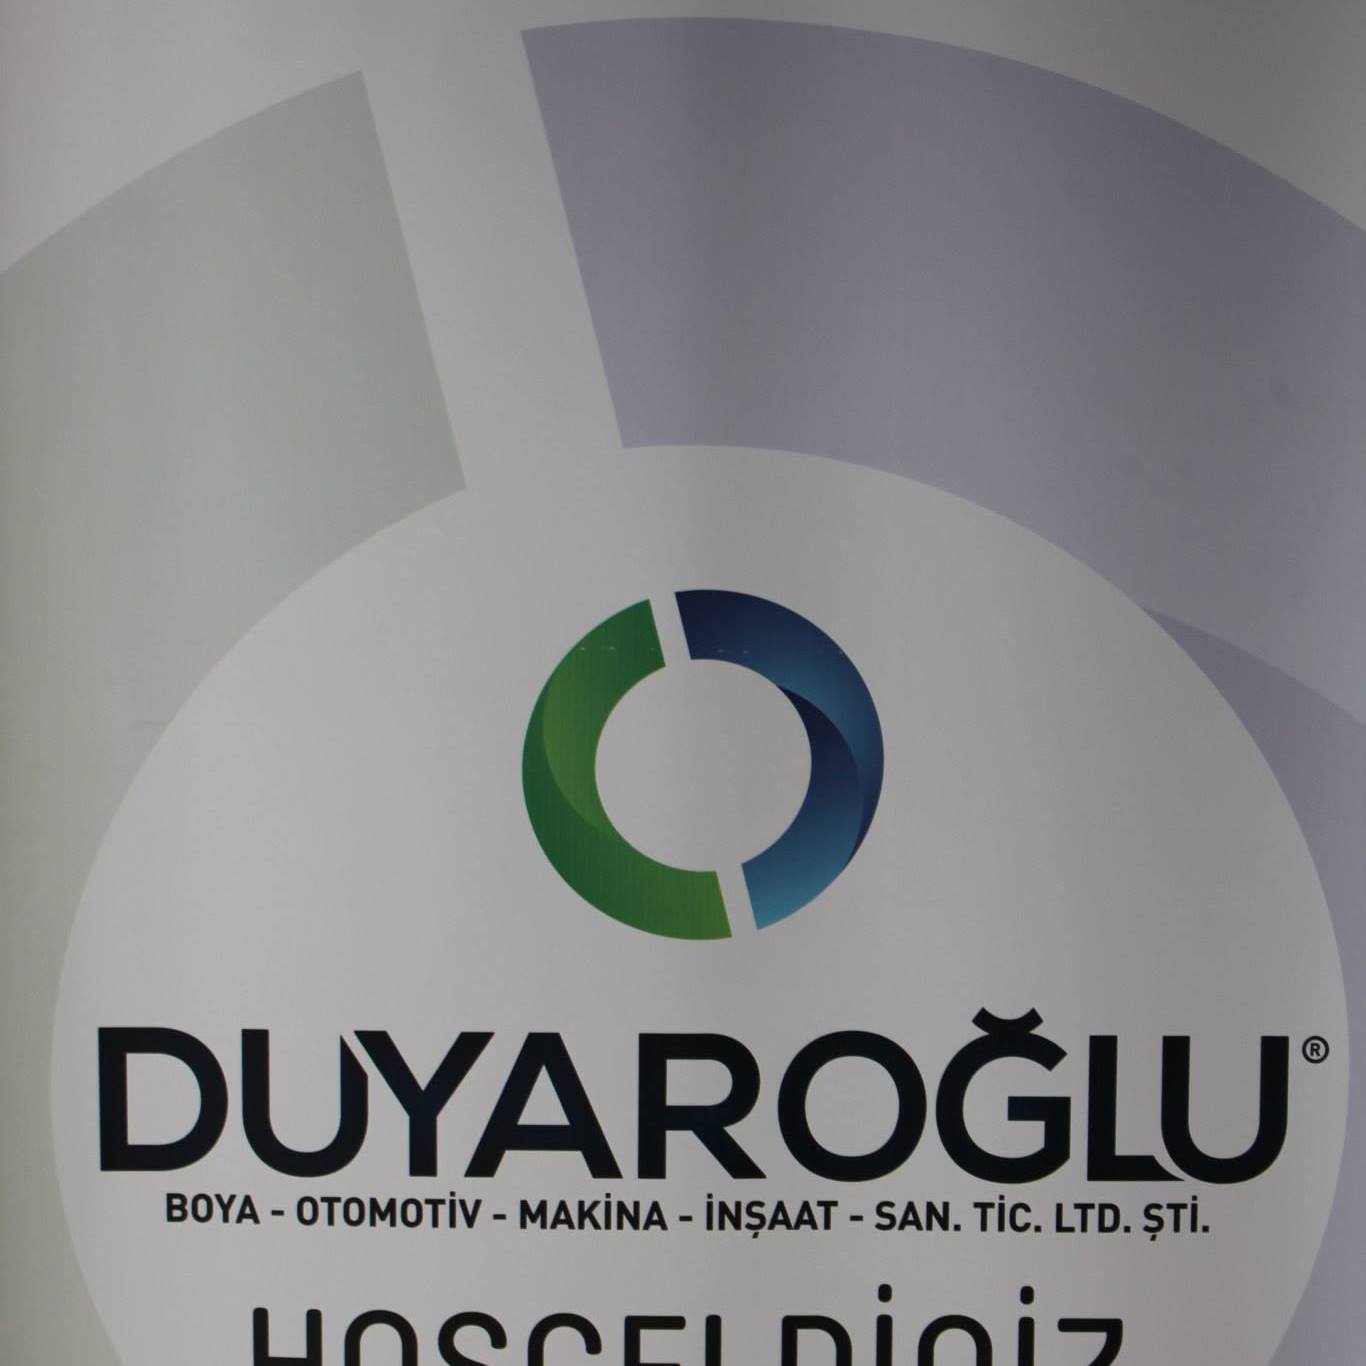 Duyarogluboya